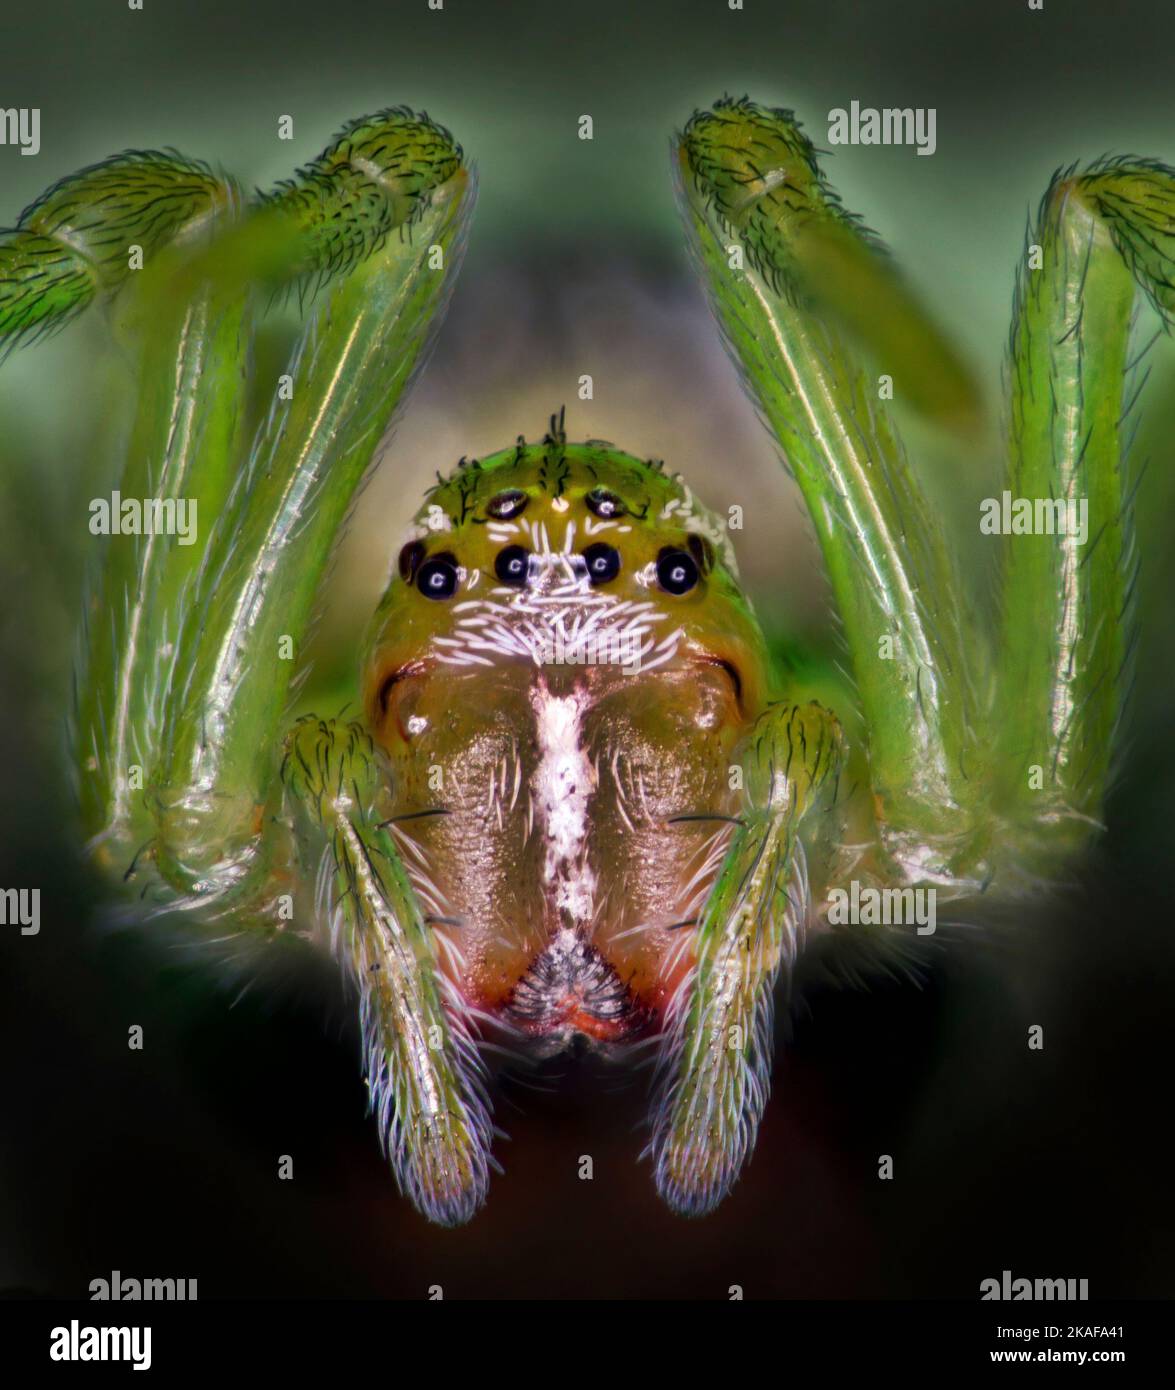 Piccolo ragno verde, Araniella cucurbitina, Regno Unito. Immagine macro verticale alta Foto Stock